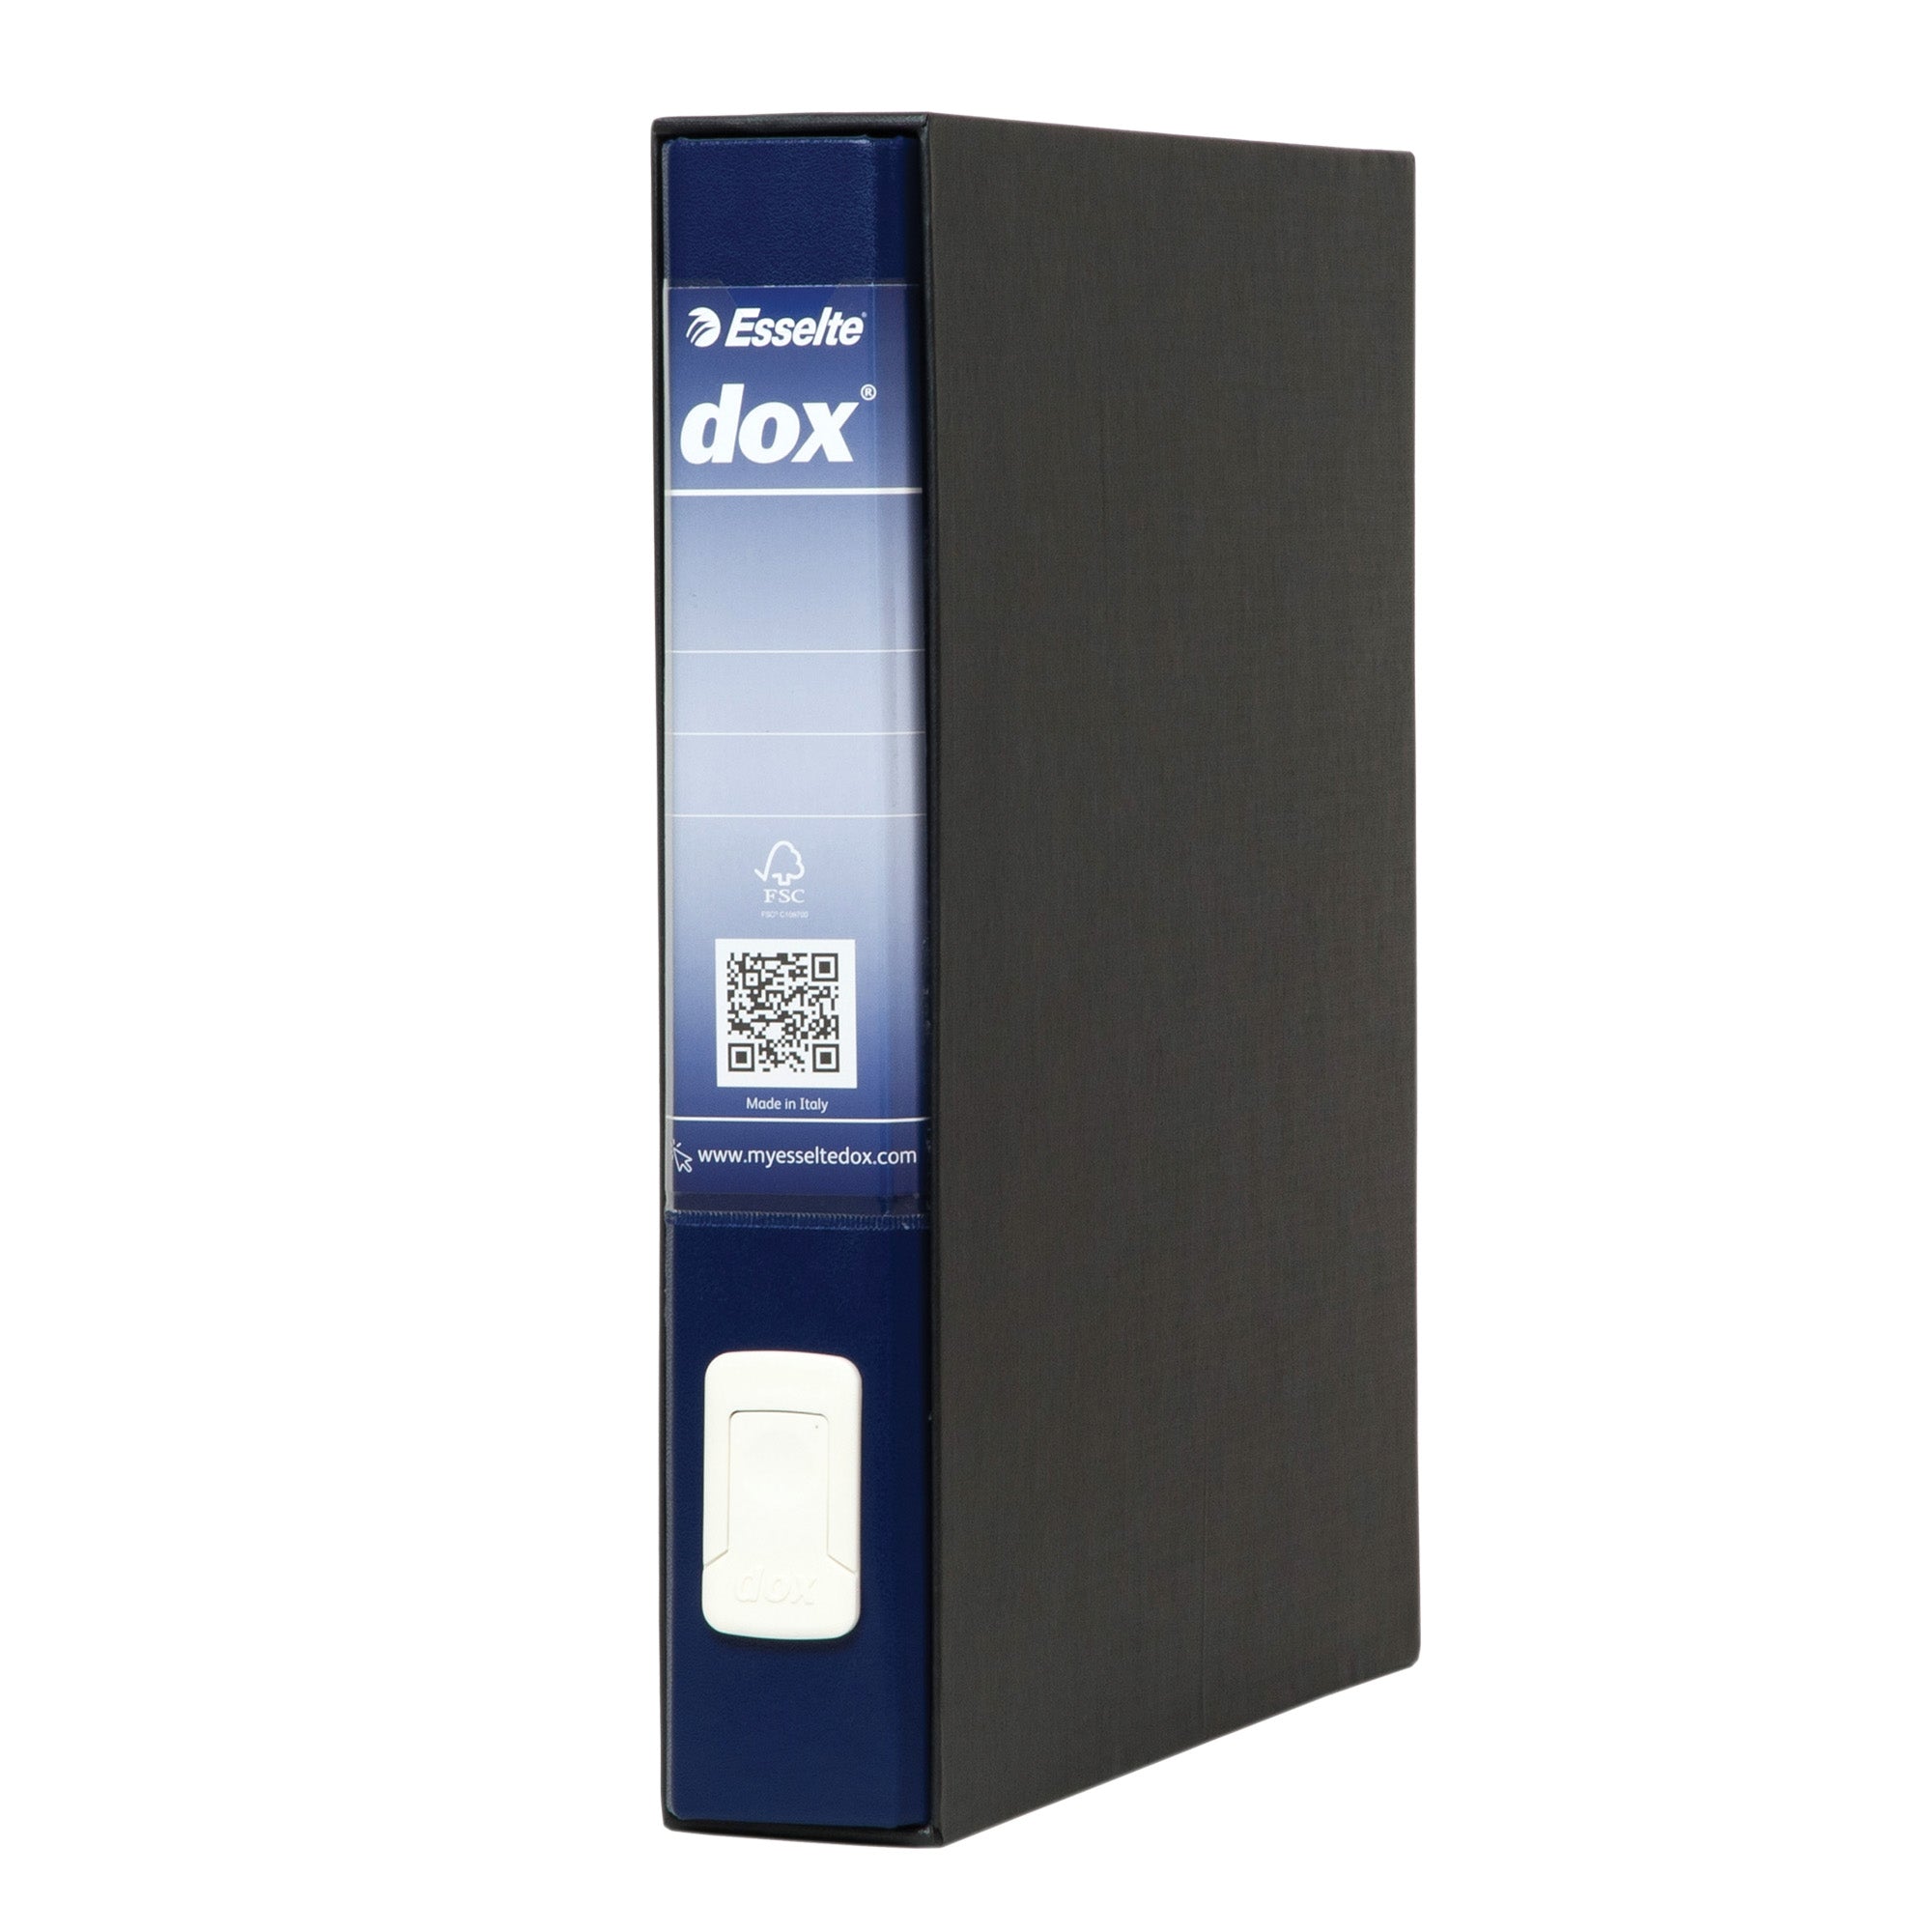 dox-registratore-4-blu-dorso-5cm-f-to-commerciale-esselte